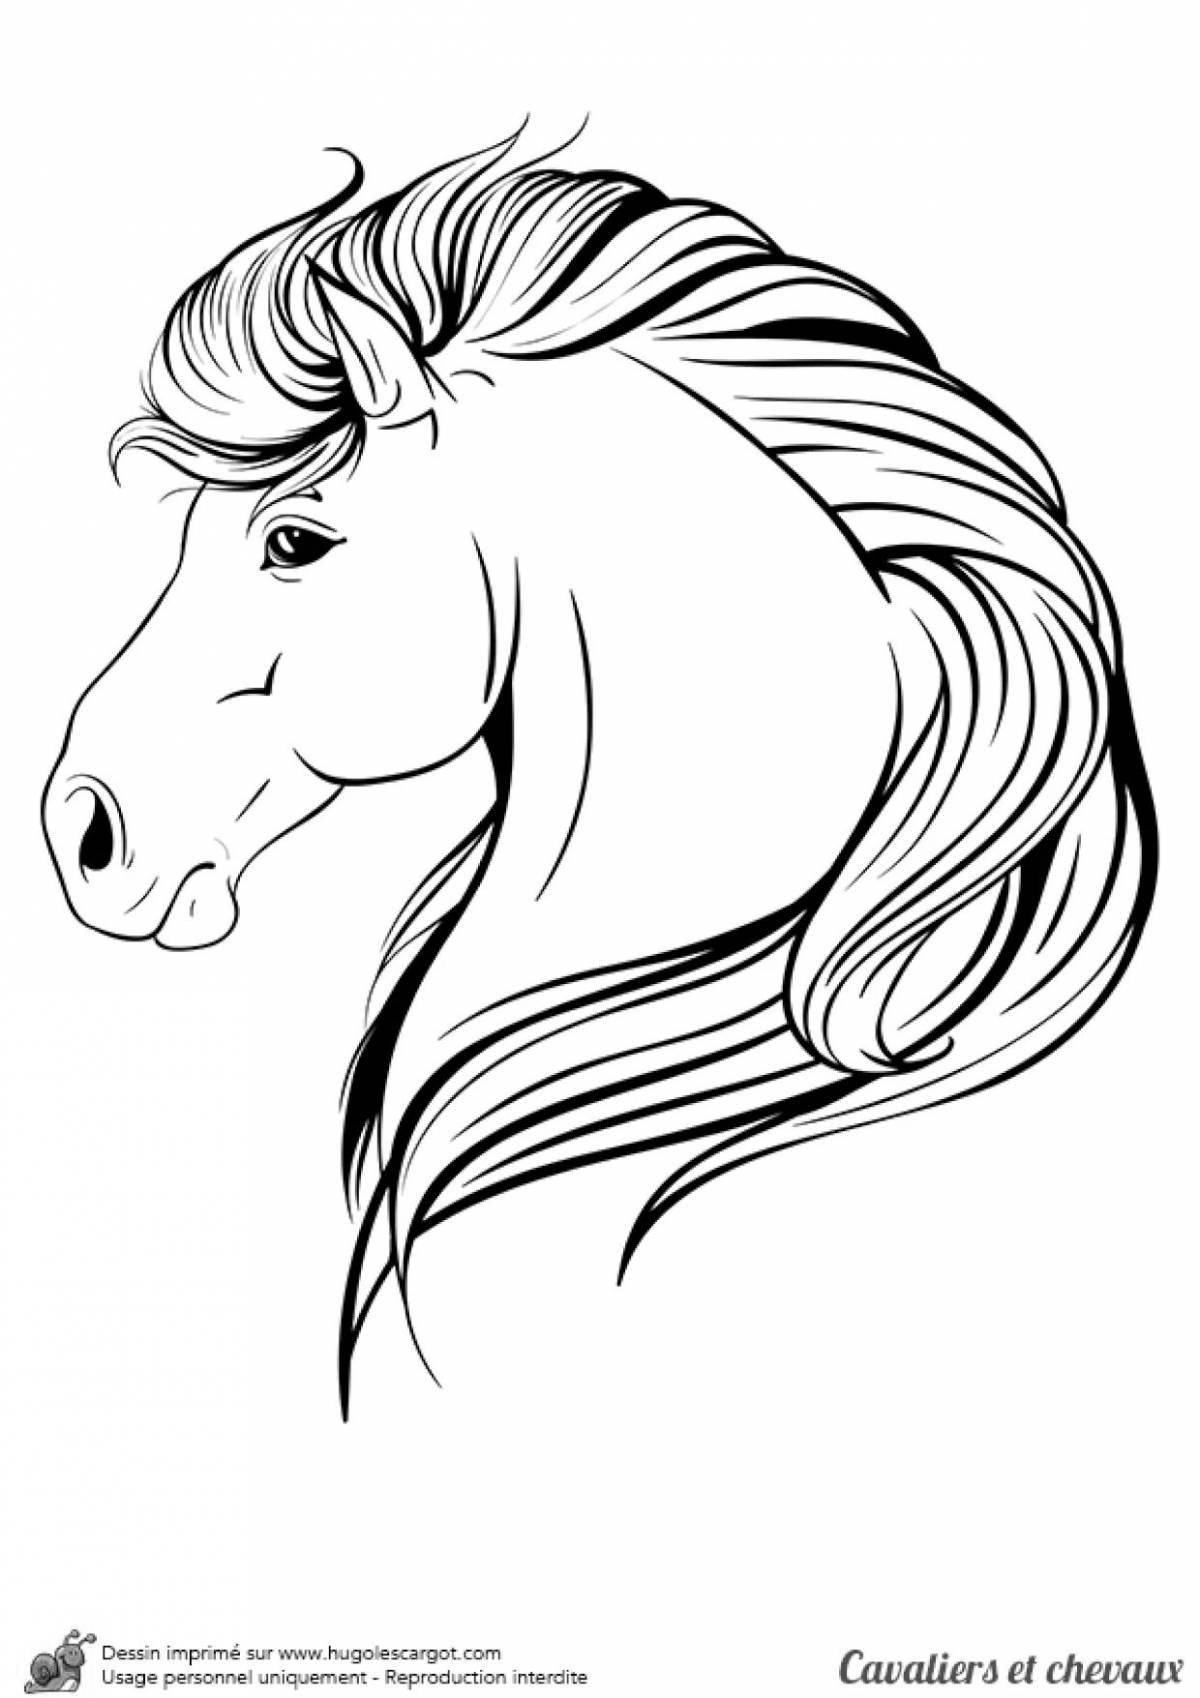 Королевская раскраска голова лошади